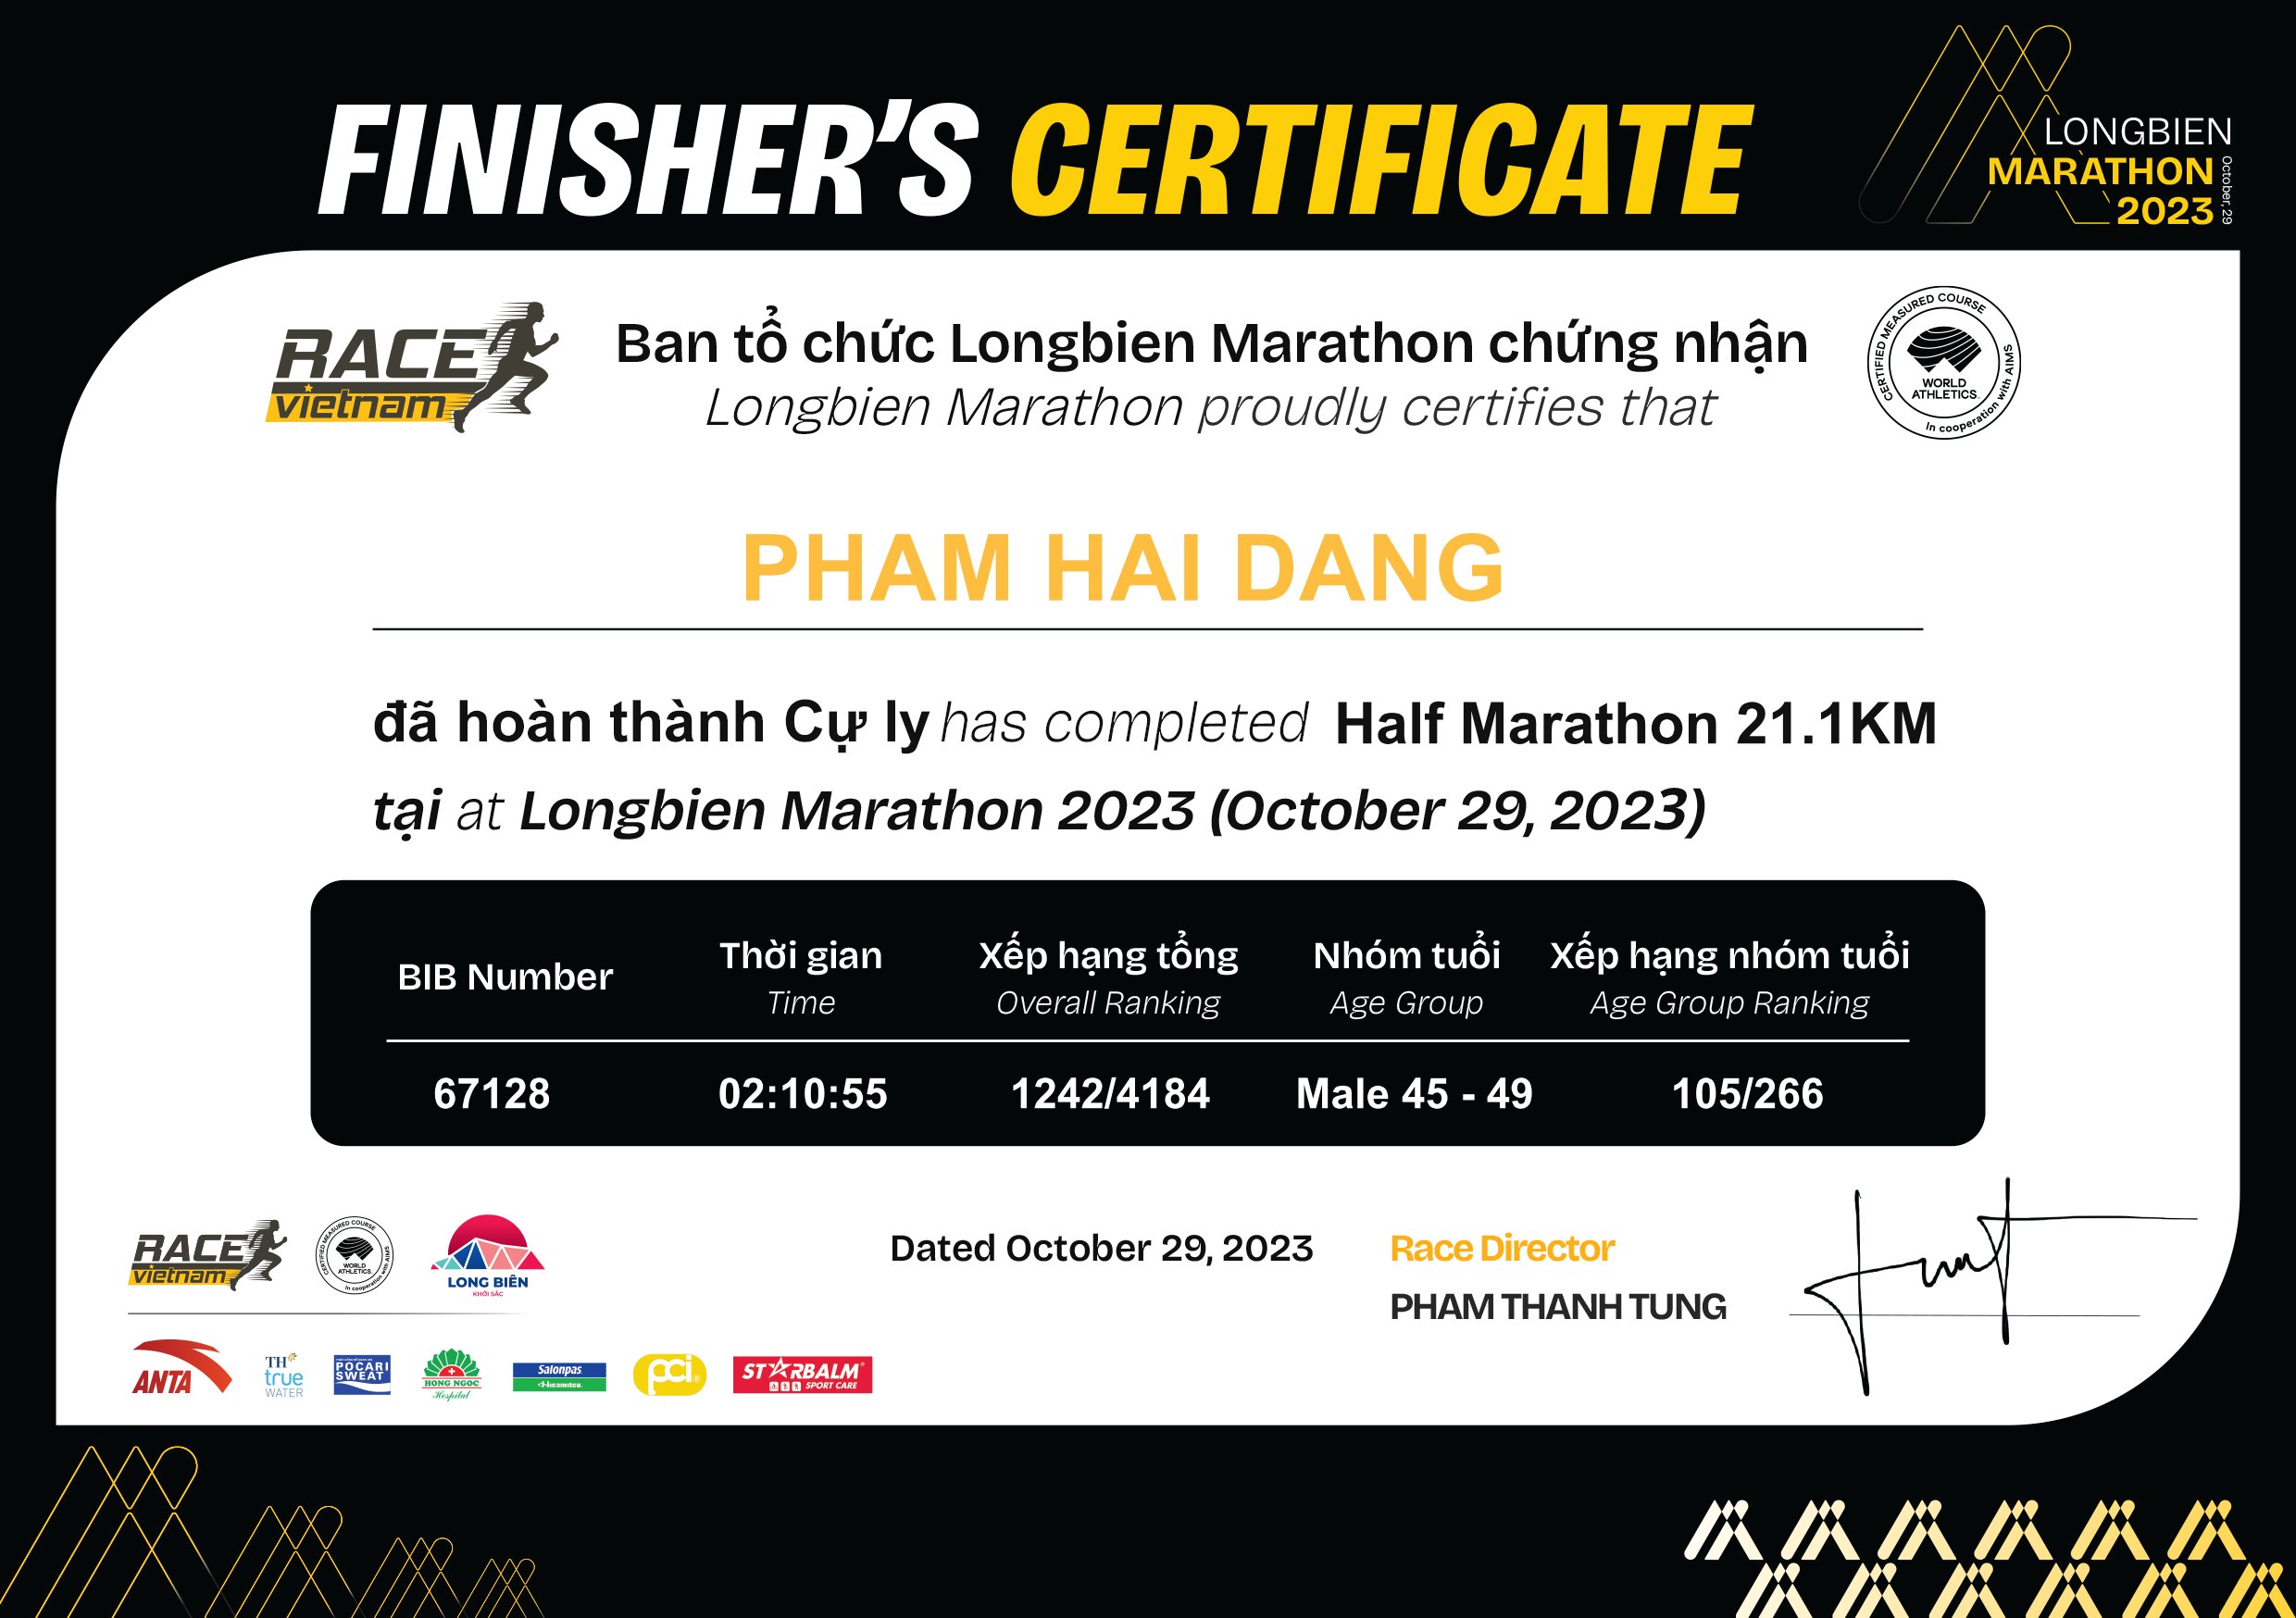 67128 - Pham Hai Dang